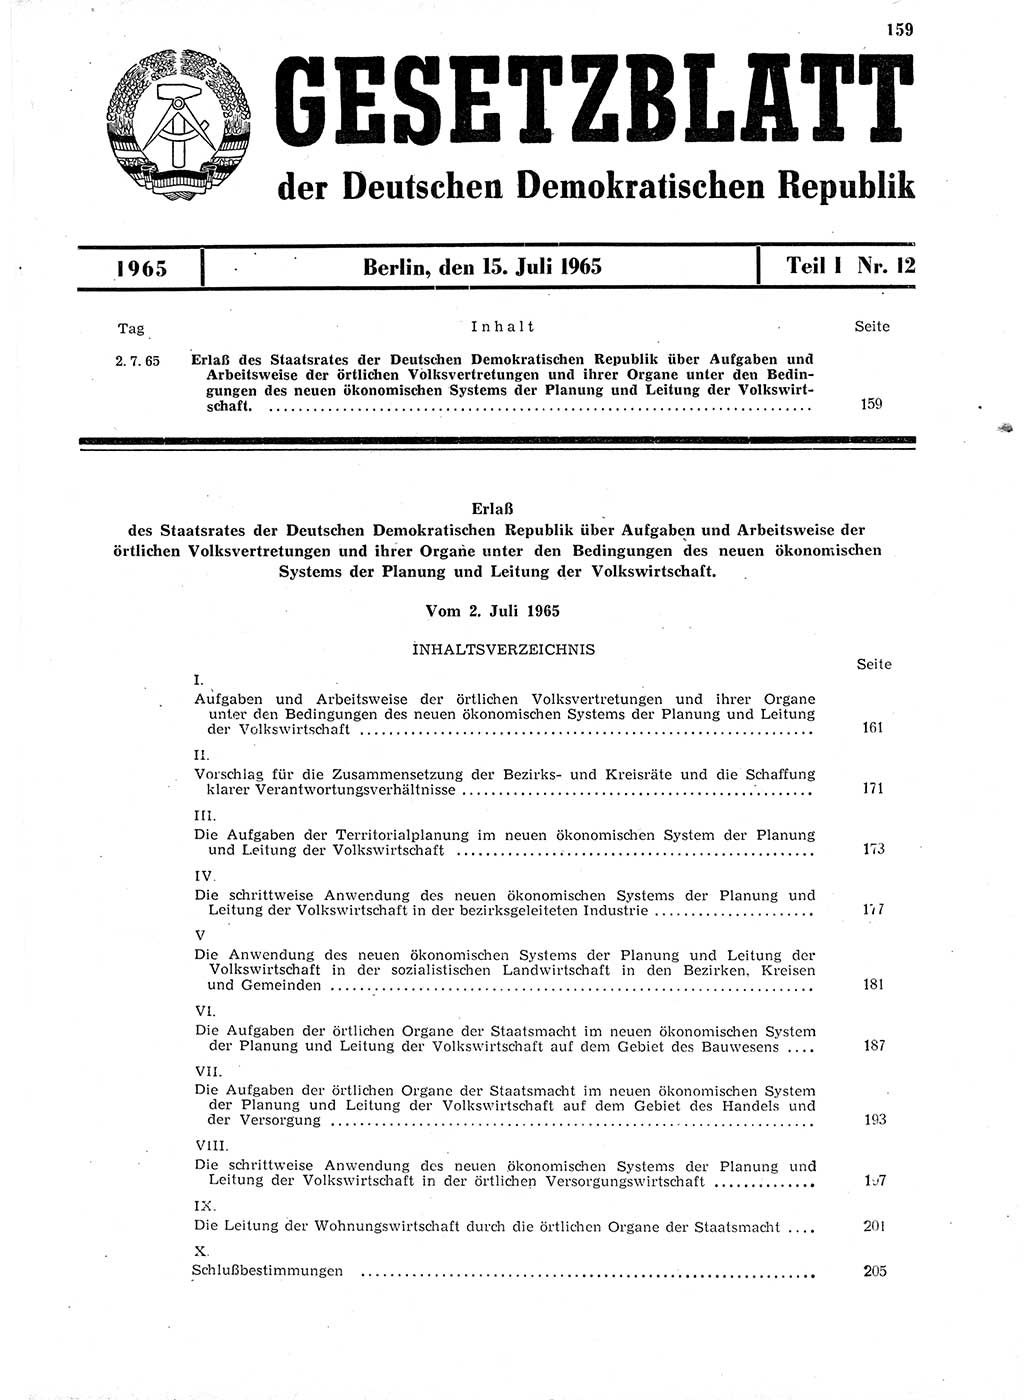 Gesetzblatt (GBl.) der Deutschen Demokratischen Republik (DDR) Teil Ⅰ 1965, Seite 159 (GBl. DDR Ⅰ 1965, S. 159)